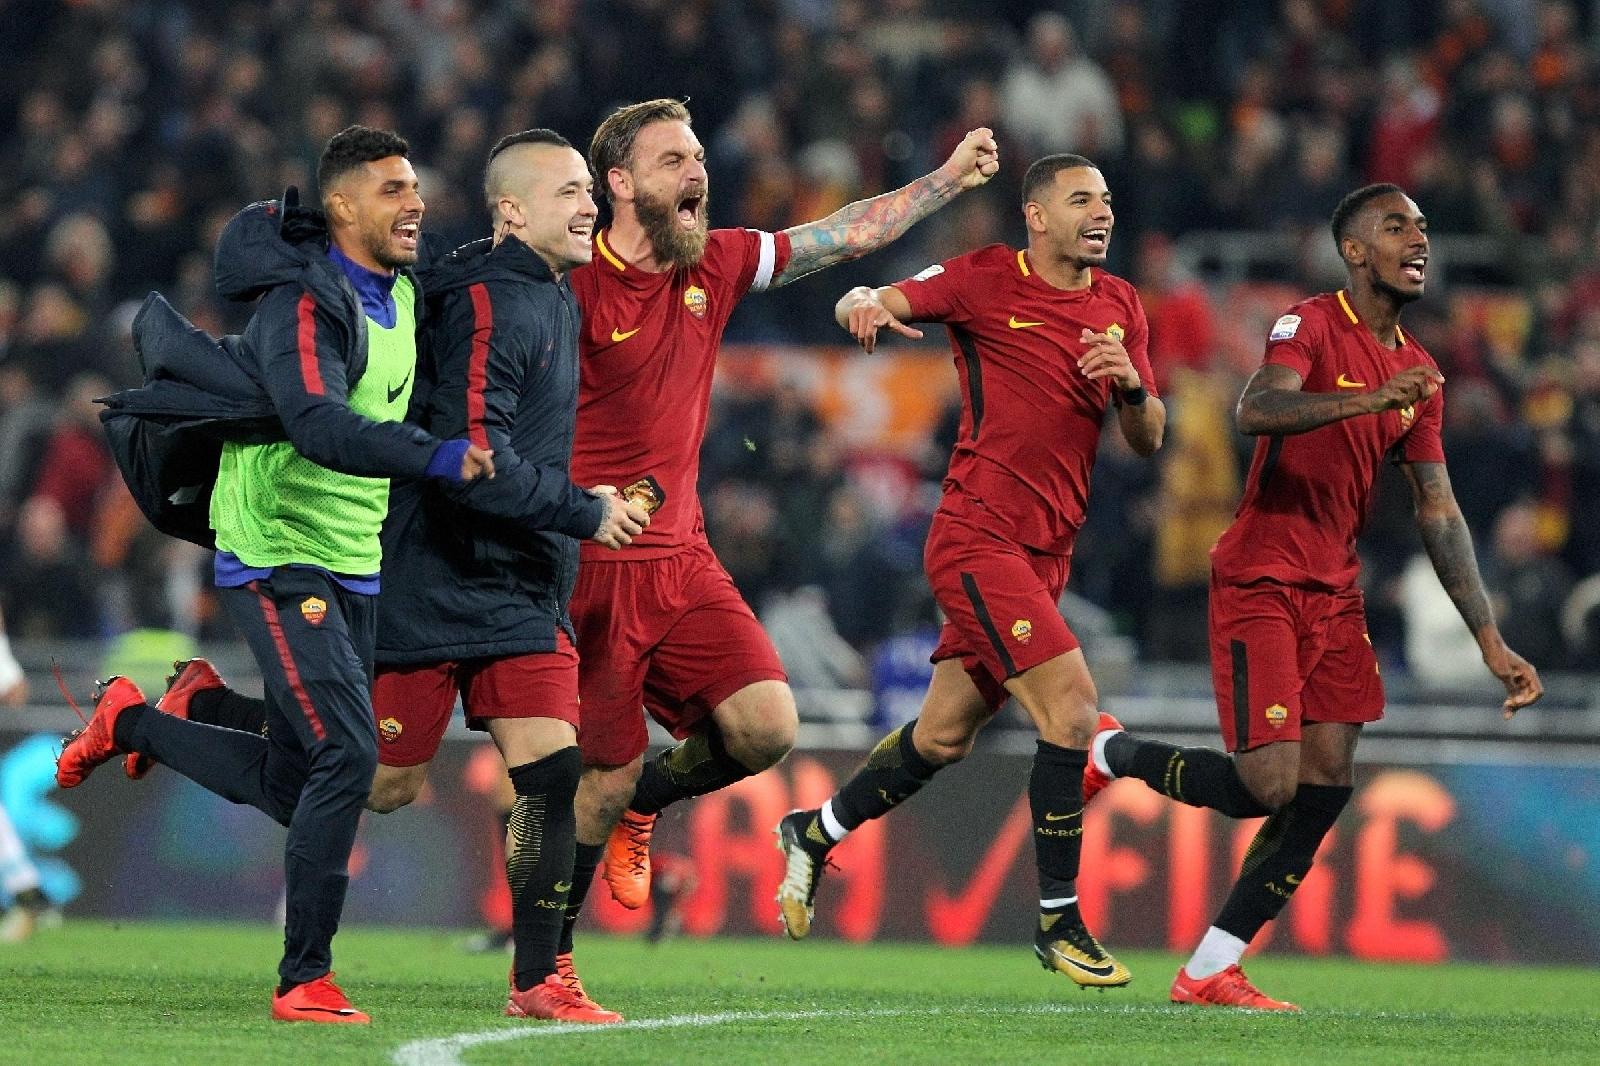 Roma-Lazio 2-1: Radja tricolore sul derby